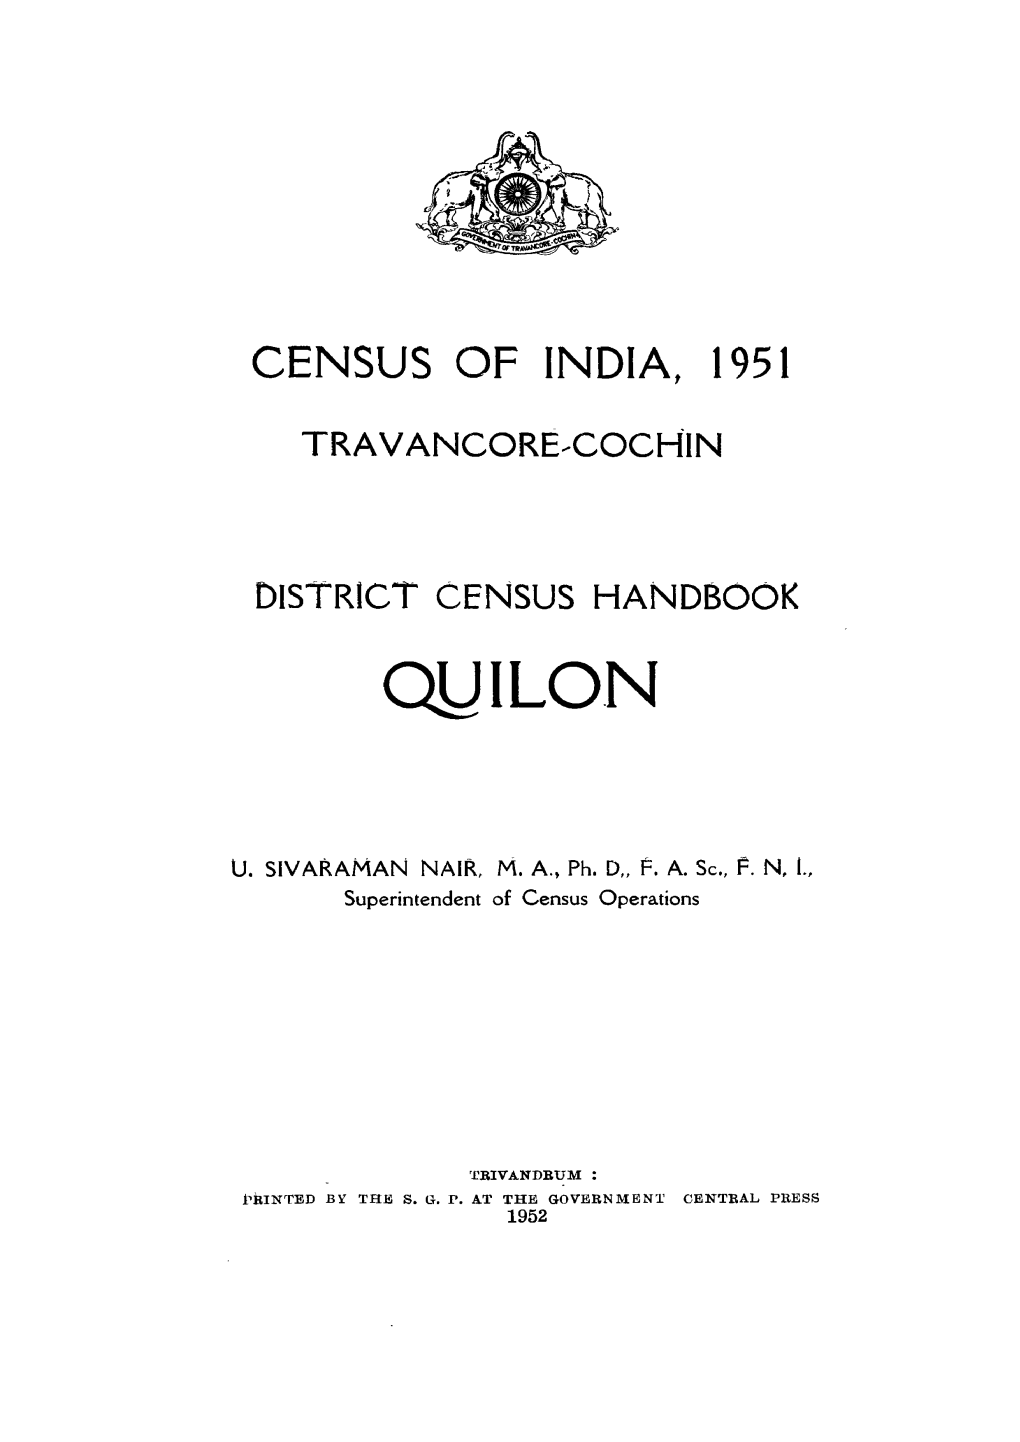 Travancore-Cochin, Quilon